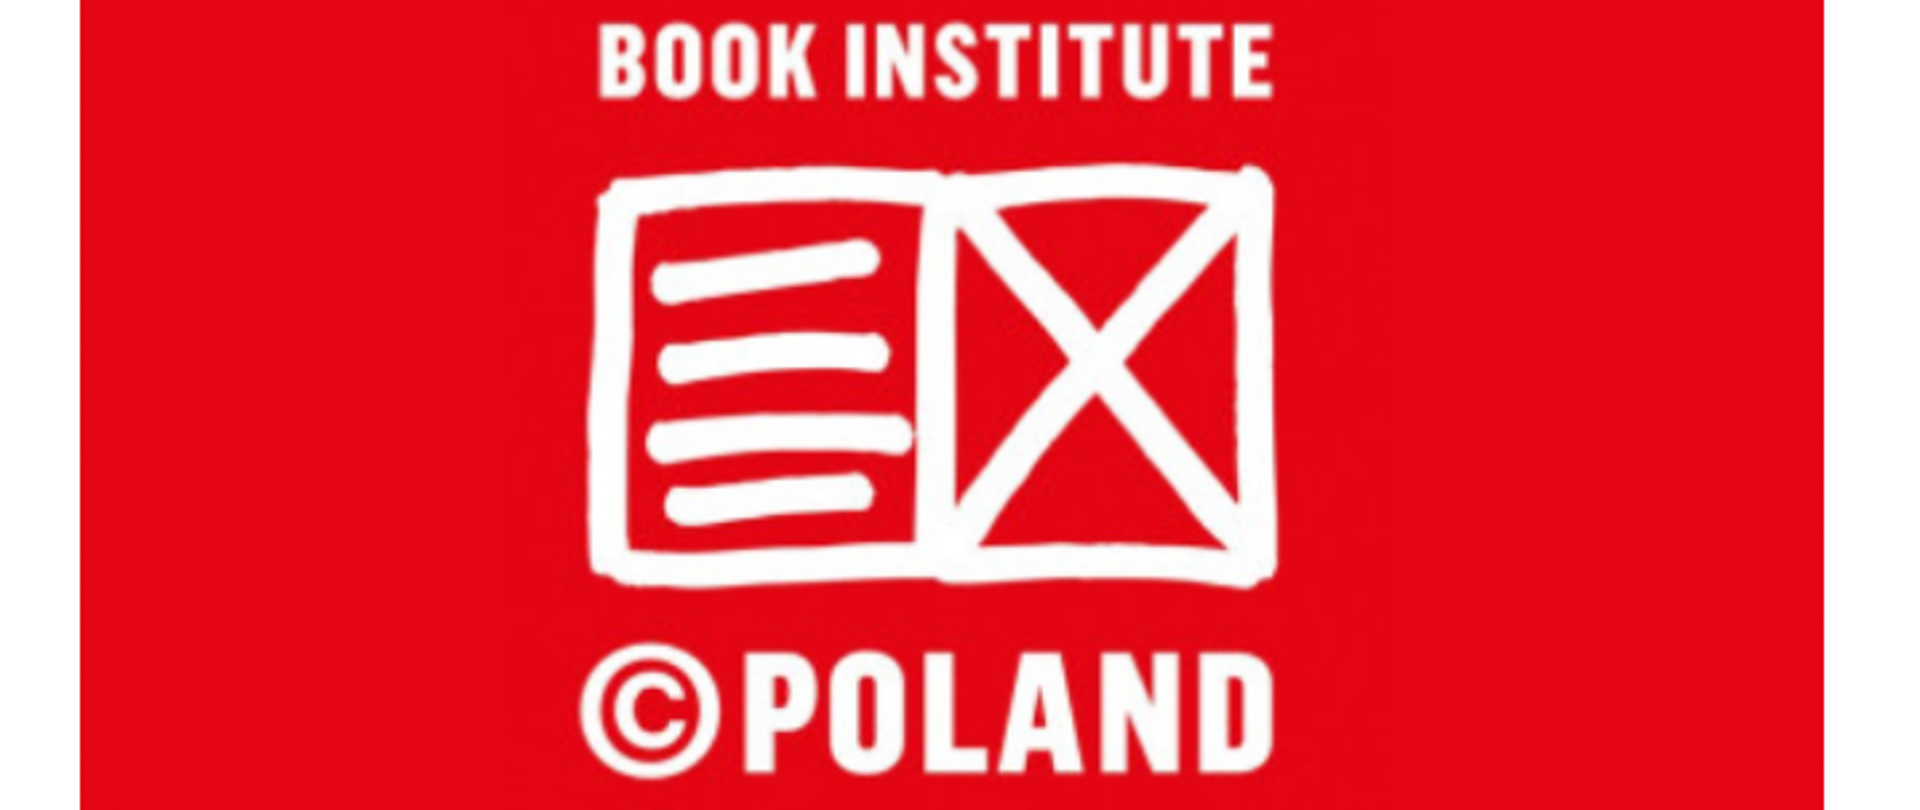 book_institute